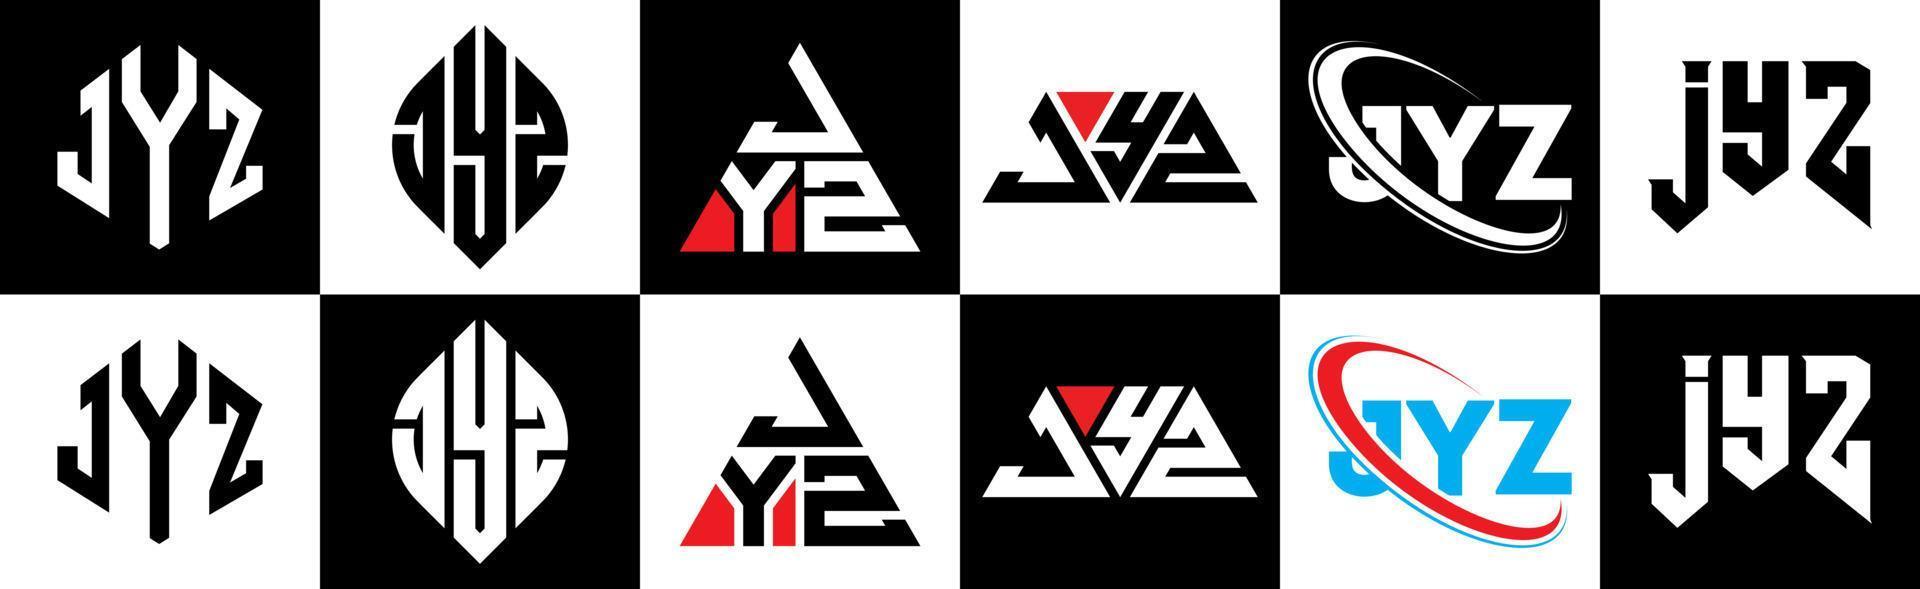 jyz-Buchstaben-Logo-Design in sechs Stilen. jyz polygon, kreis, dreieck, hexagon, flacher und einfacher stil mit schwarz-weißem buchstabenlogo in einer zeichenfläche. Jyz minimalistisches und klassisches Logo vektor